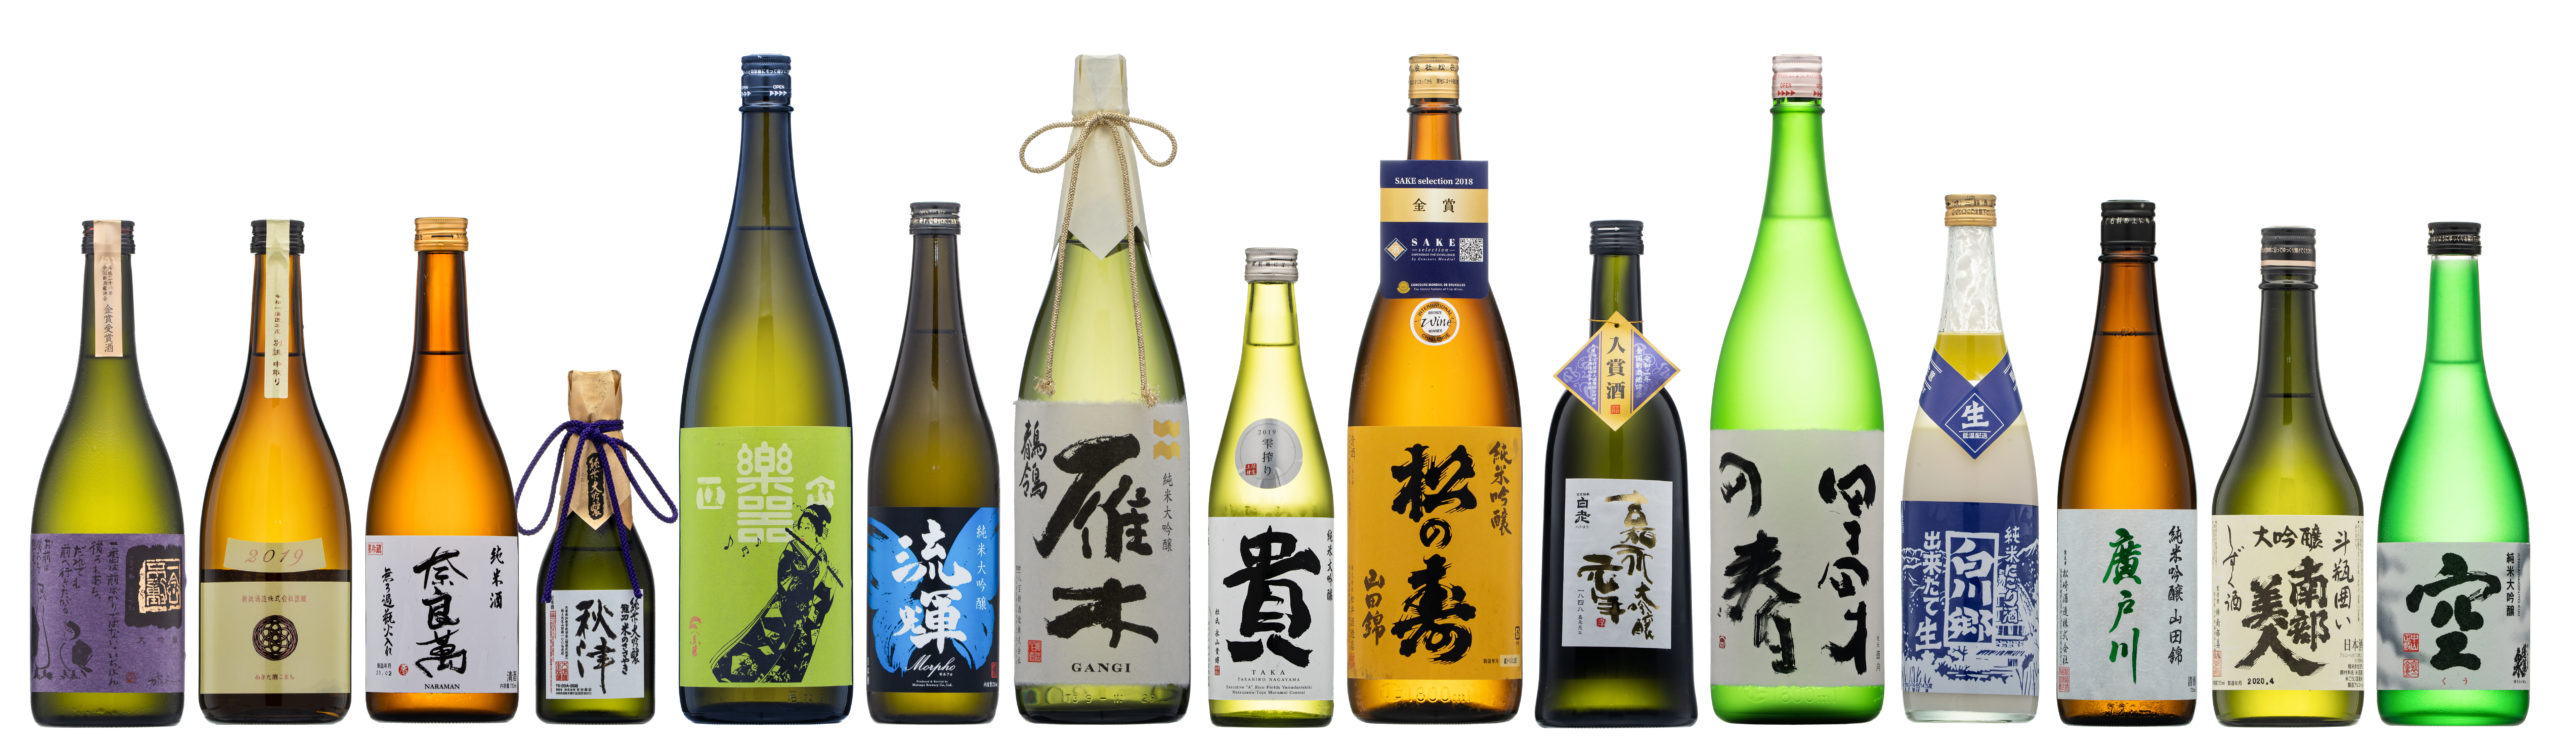 由紀の酒 Best of the year 2020